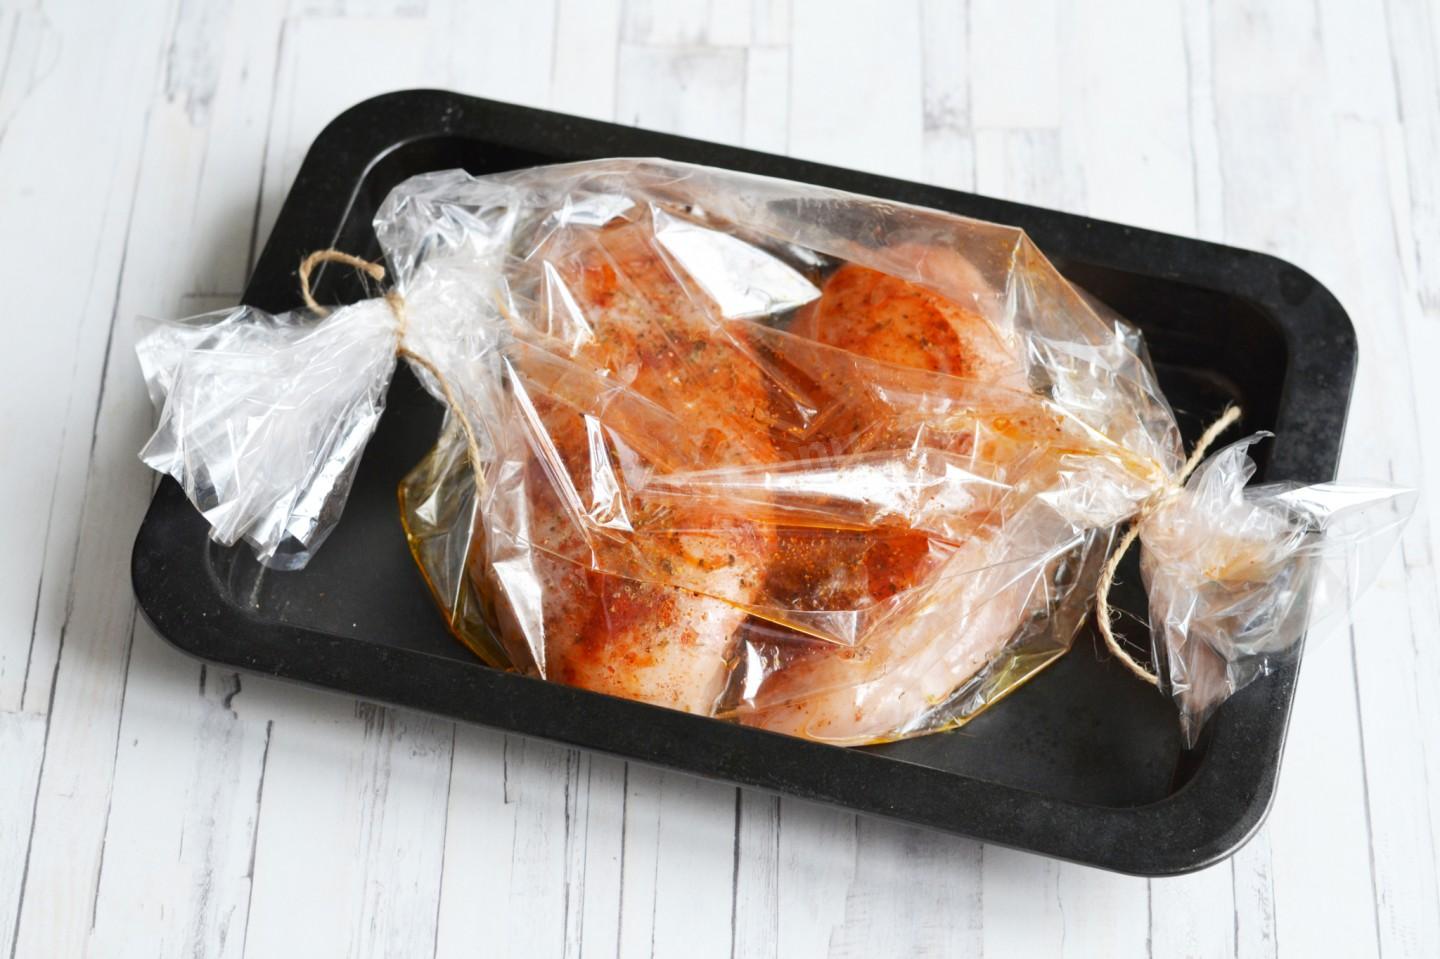 Хлеб в духовке в рукаве для запекания. Пакет для запекания курицы. Рукава и пакеты для запекания. Курица в рукаве для запекания. Пакеты для запекания в духовке.